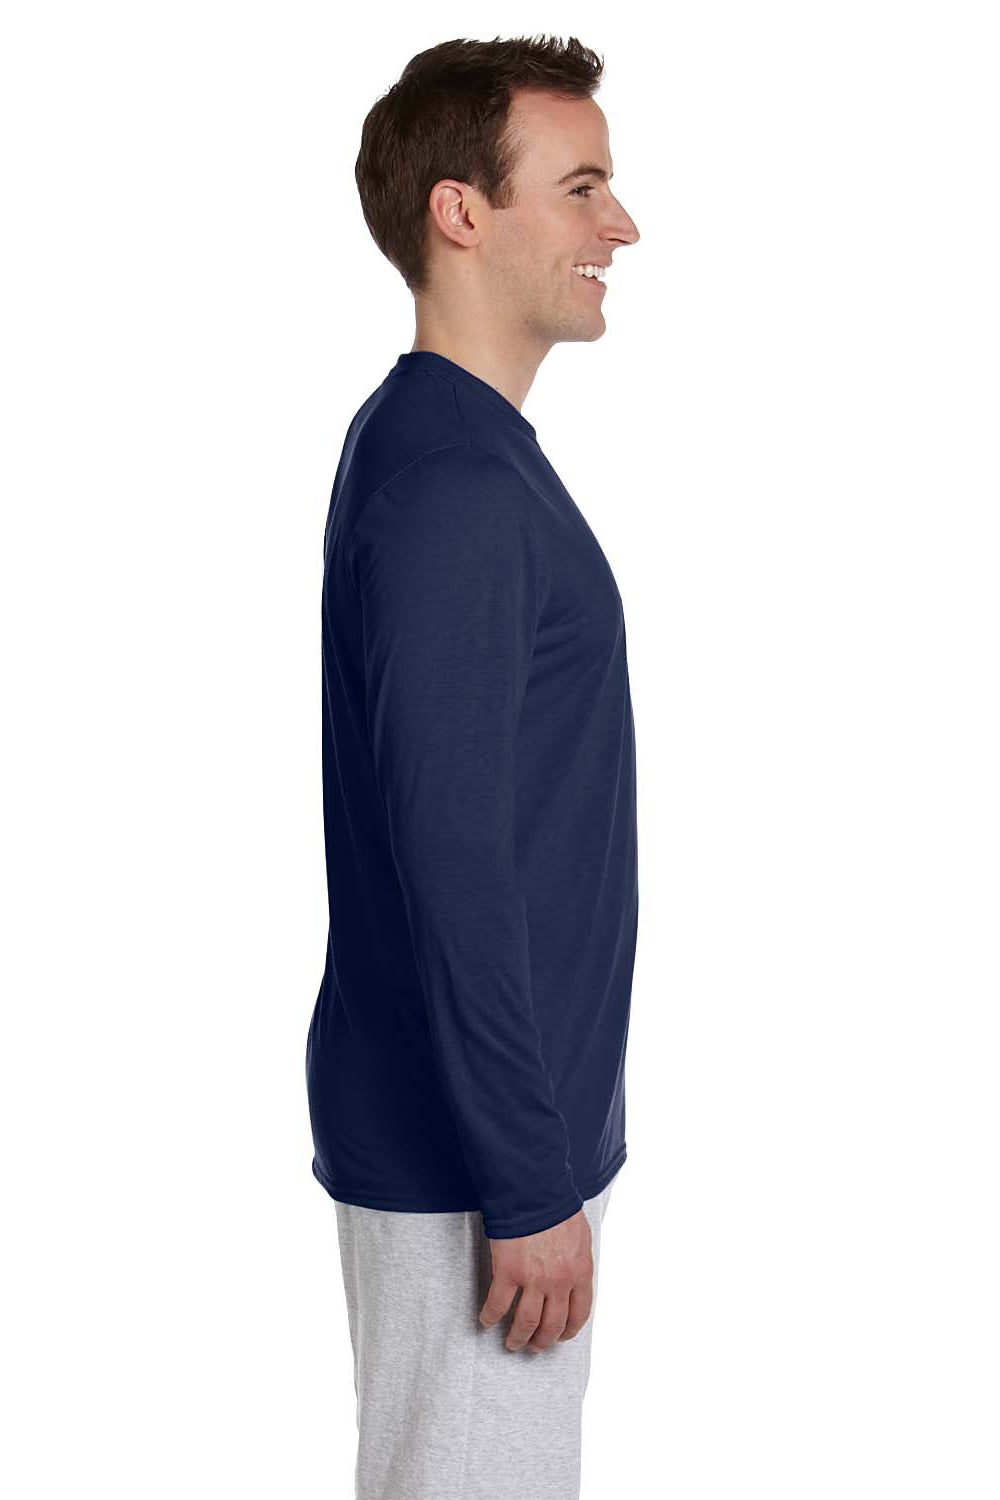 Gildan G424 Mens Performance Jersey Moisture Wicking Long Sleeve Crewneck T-Shirt Navy Blue Side